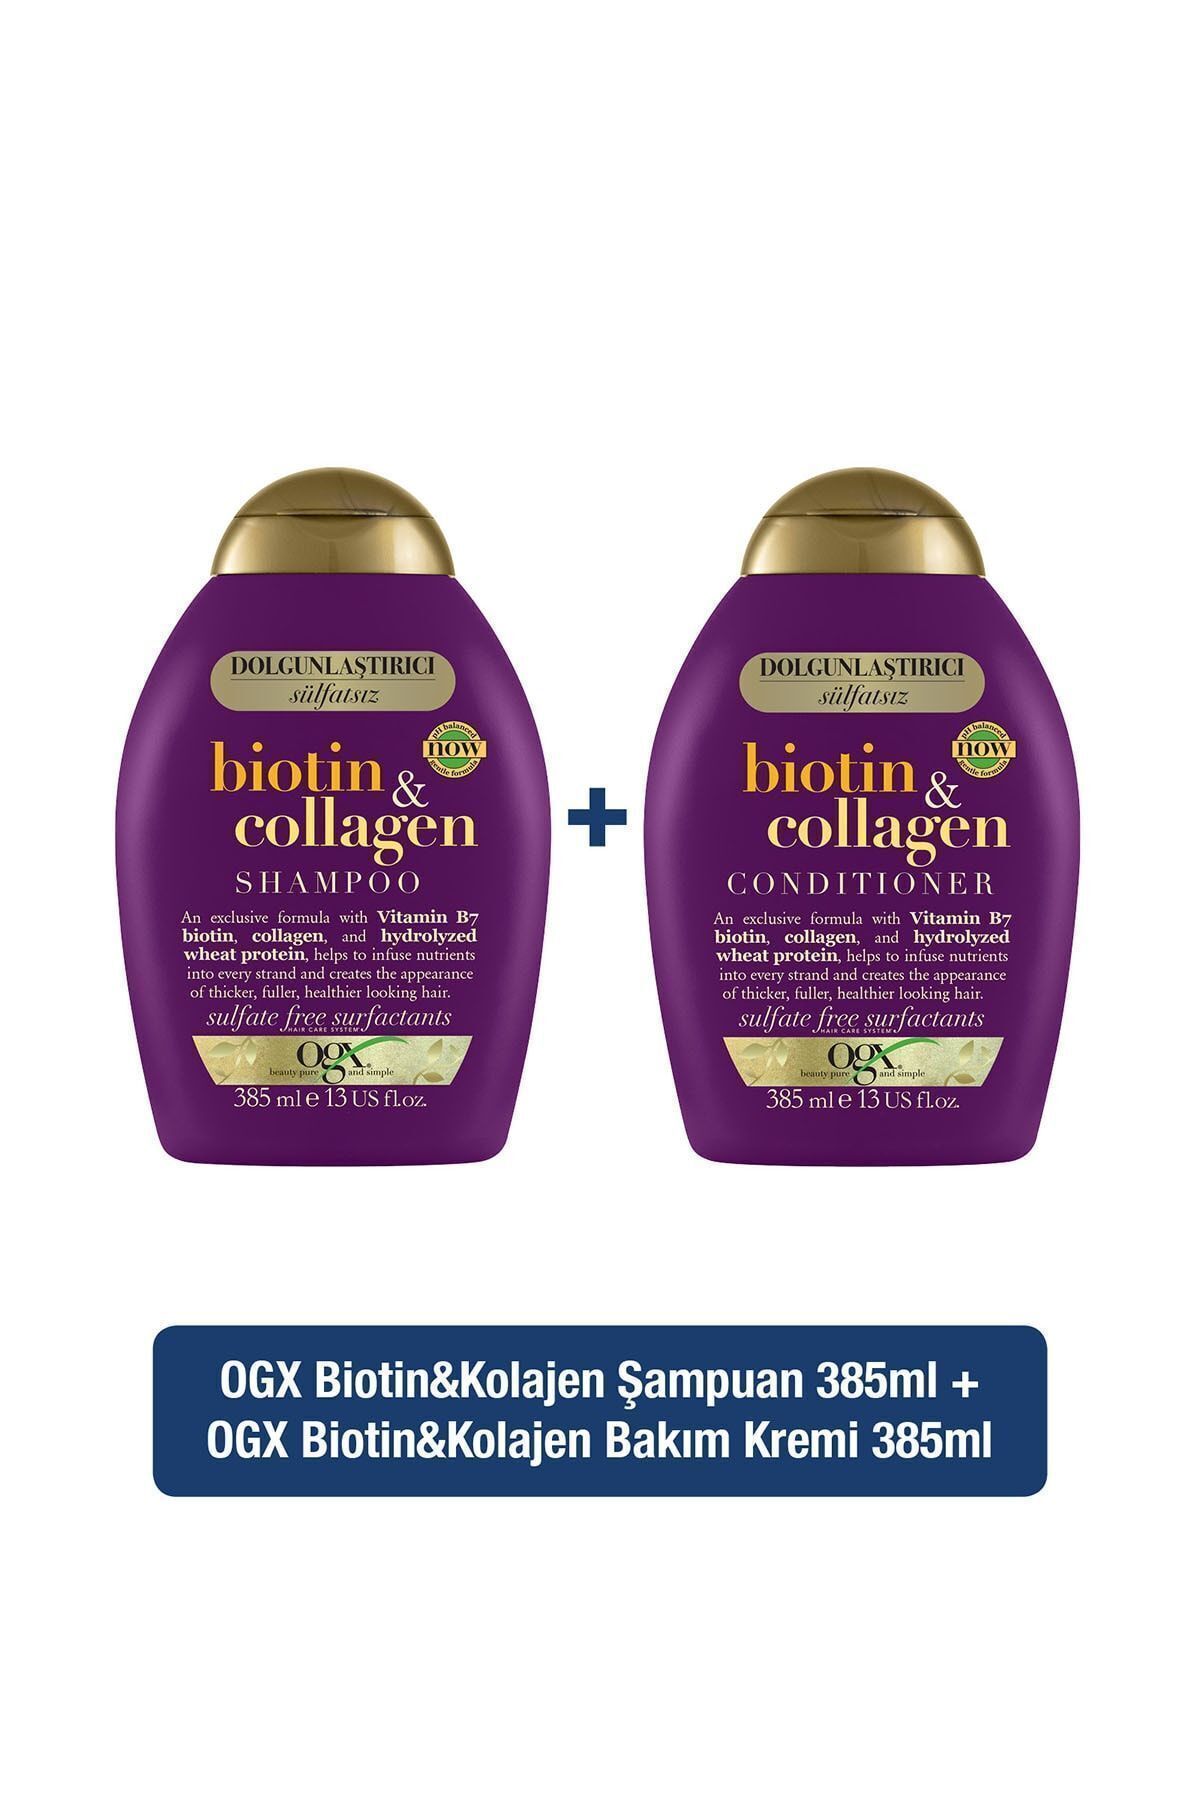 OGX Dolgunlaştırıcı Biotin & Kolajen Sülfatsız Şampuan + Saç Bakım Kremi 385 ml